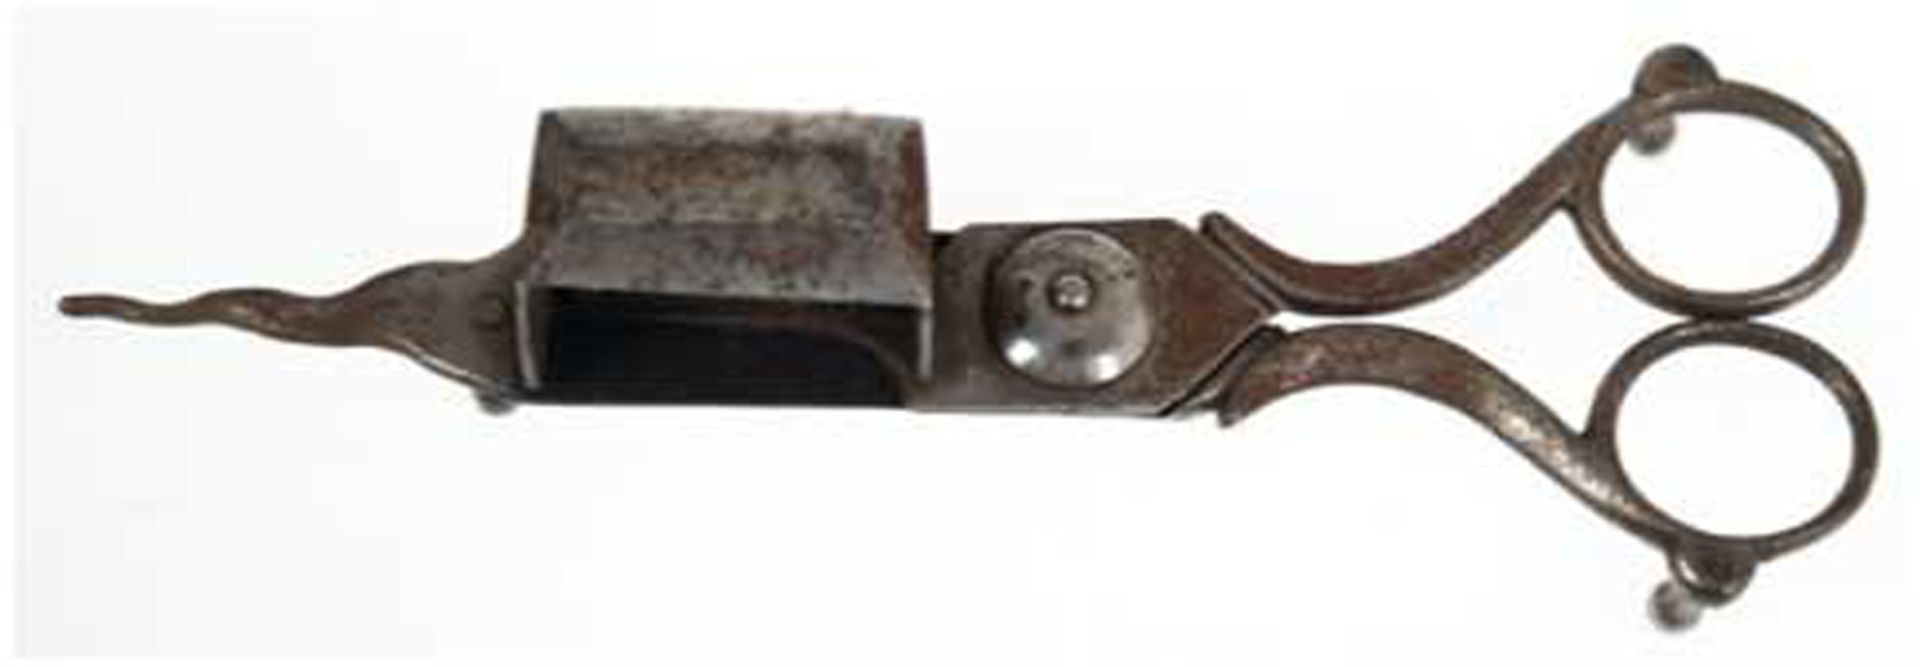 Dochtschere, 18. Jh., Eisen, Griff mit Rückzugsfeder, L. 18 cm